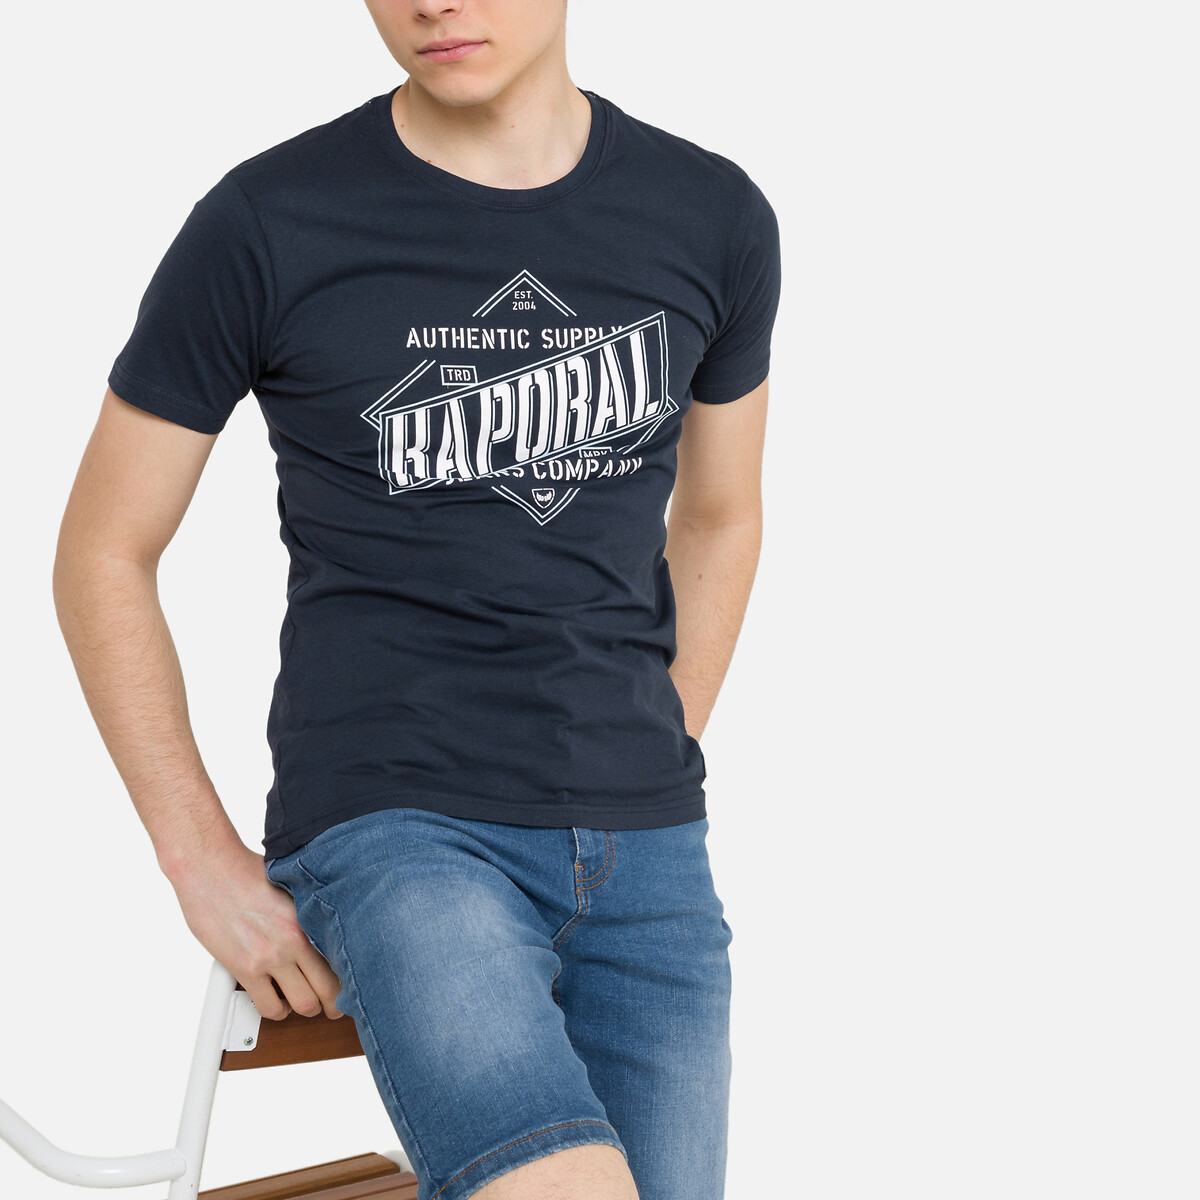 T-Shirt à Manches Longues Inscription Jeans en 100% Coton Coupe Droite Elso Kaporal Garçon